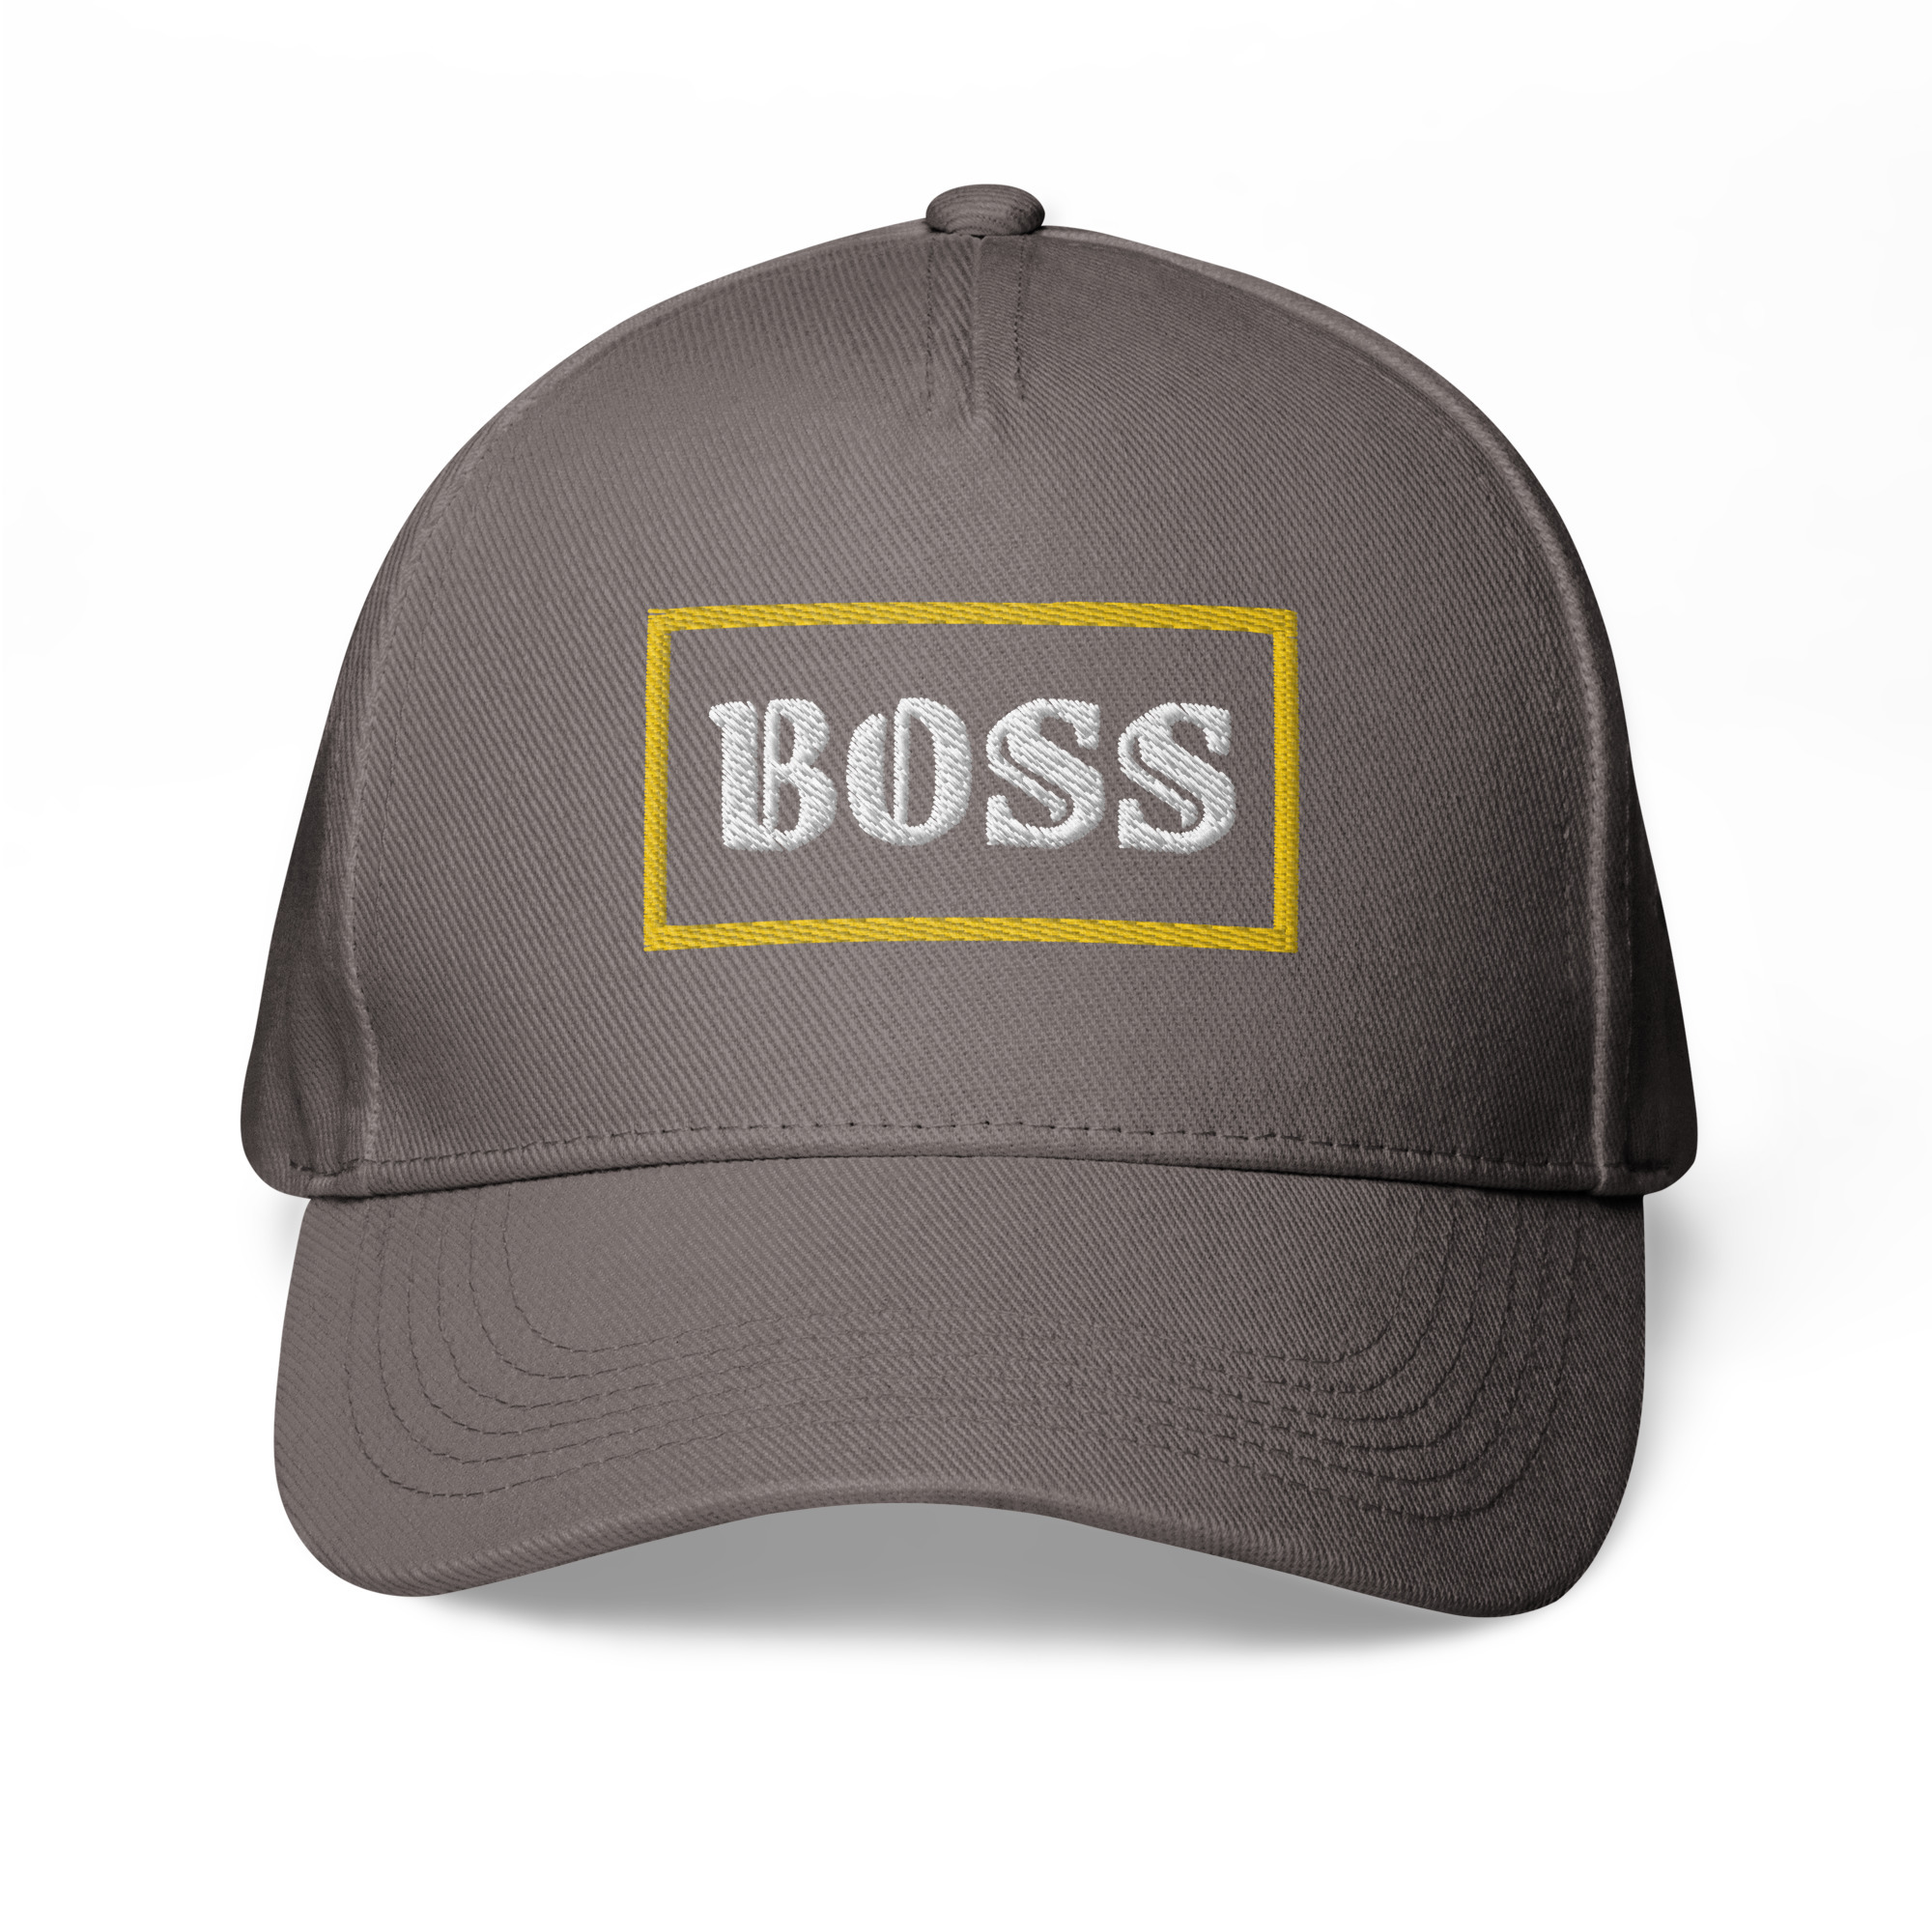 Boss on Classic baseball cap | Baseball Caps